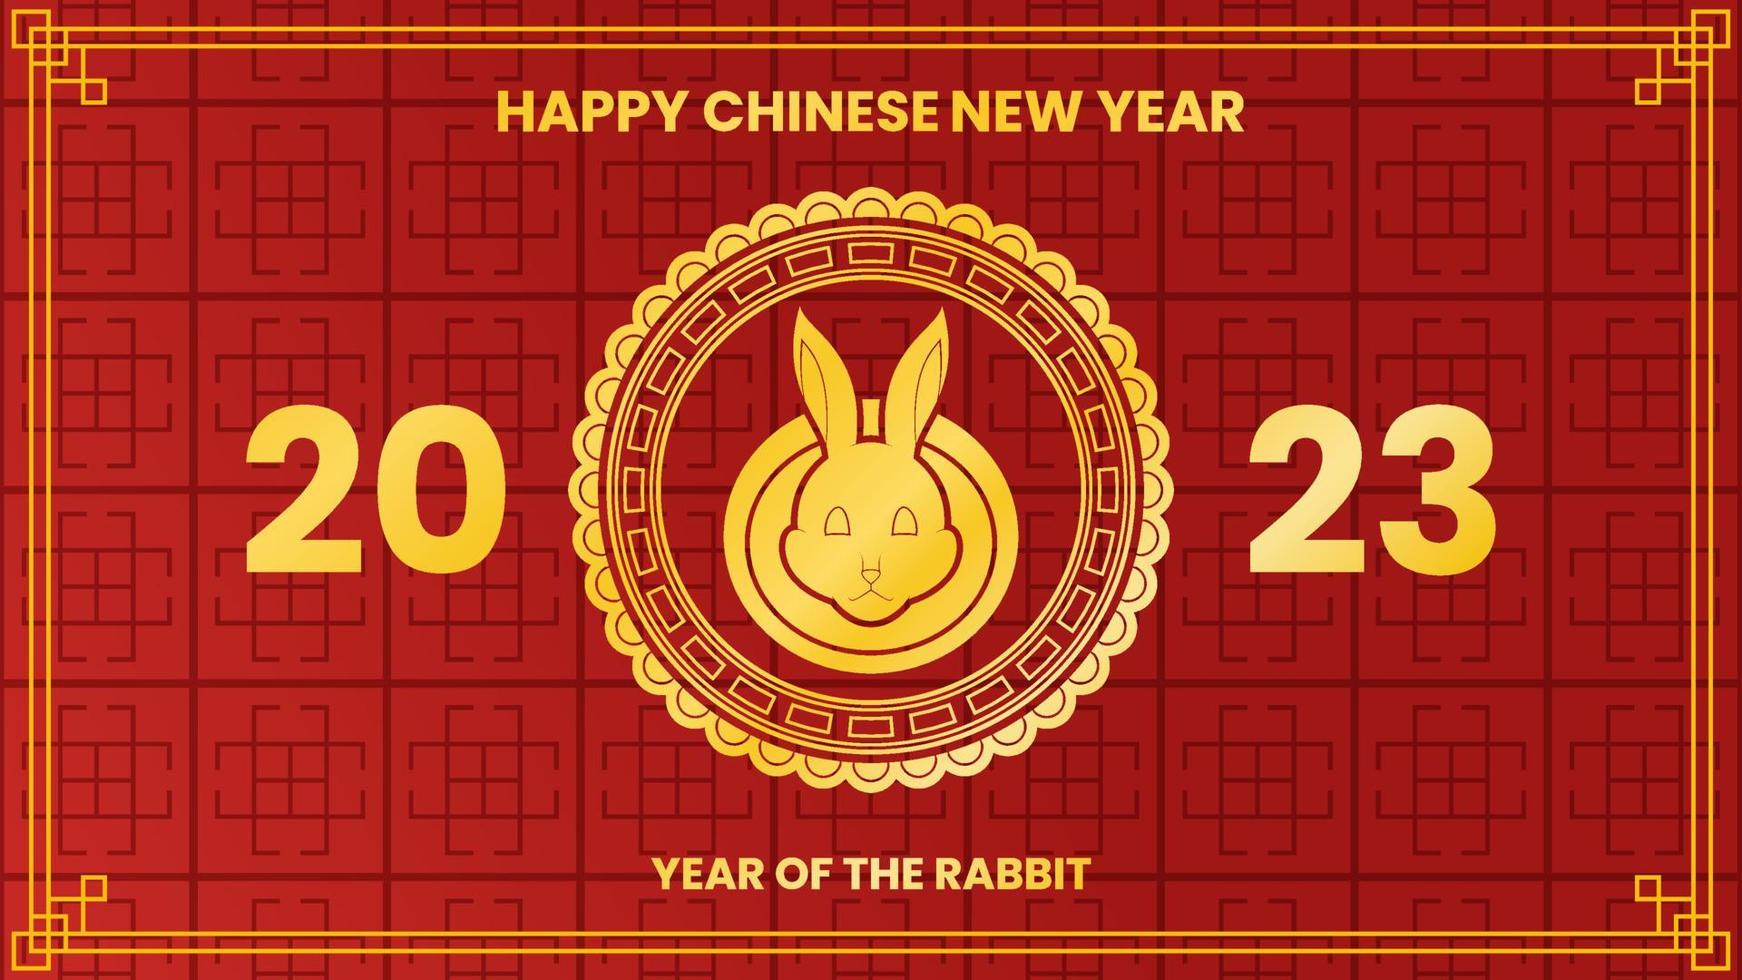 diseño chino de año nuevo 2023 con conejo, patrón y fondo rojo. utilizado para tarjetas de felicitación, afiches o pancartas vector